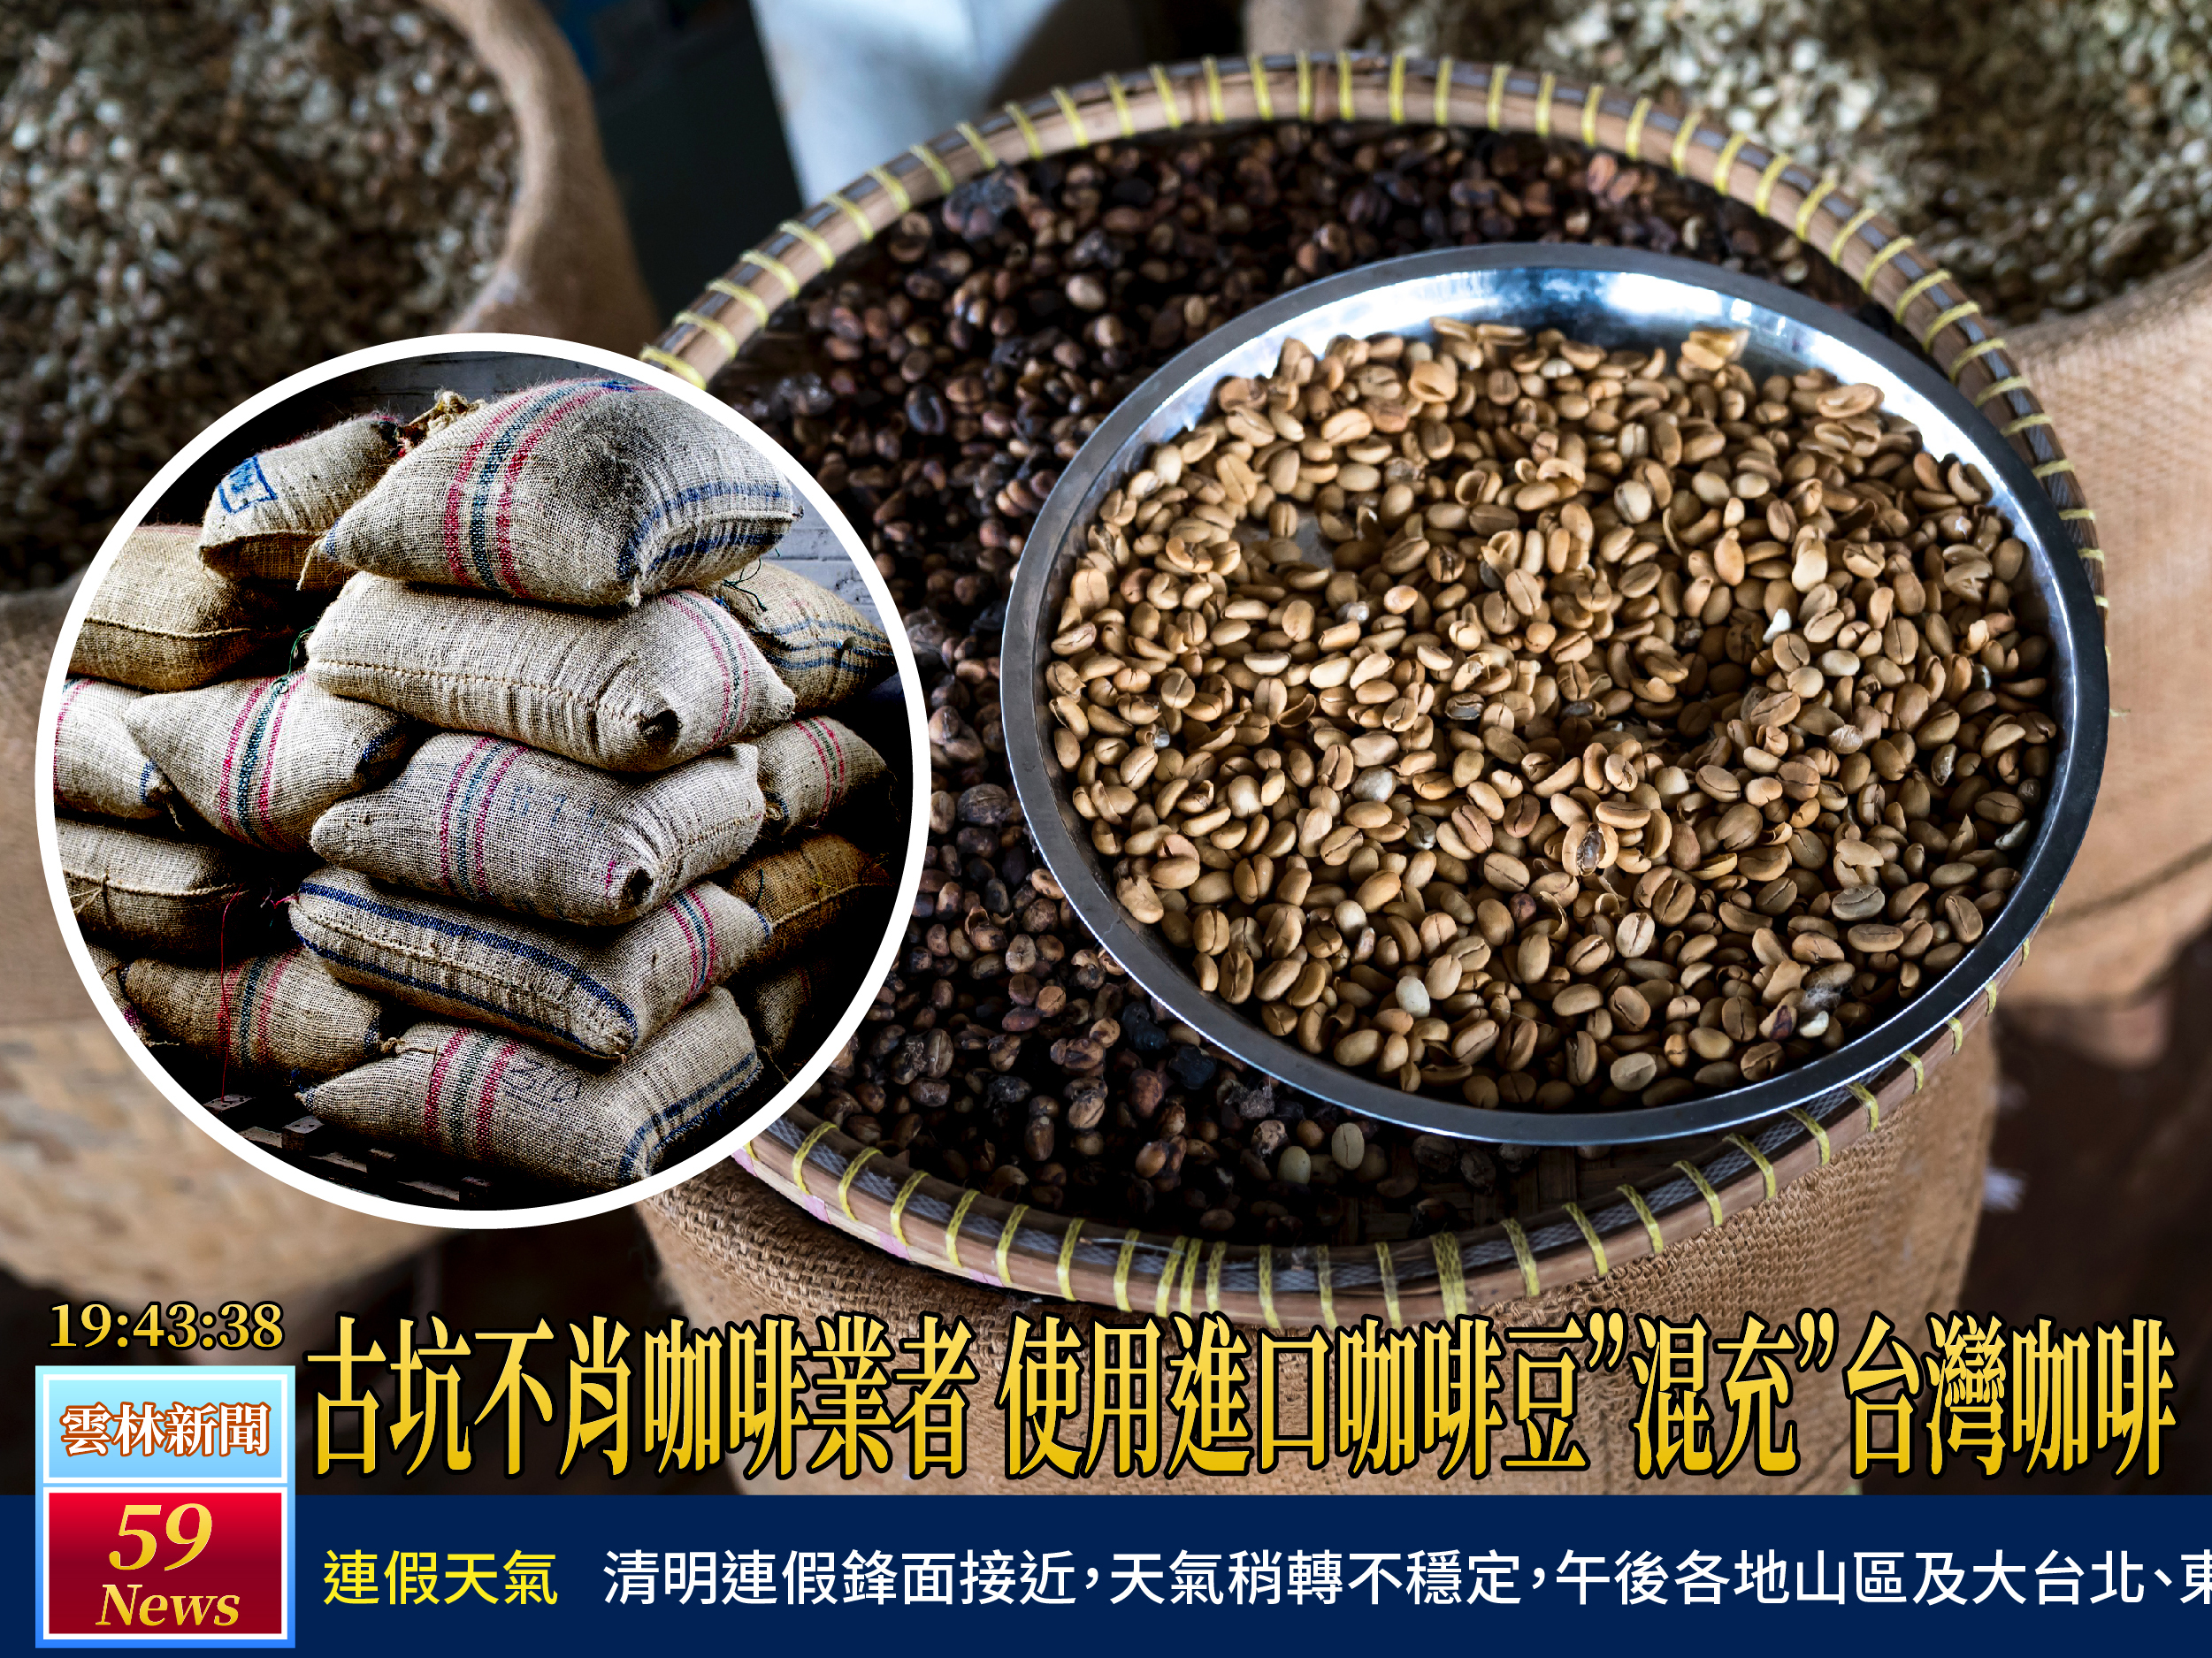 無良逐利業者重創台灣咖啡名聲